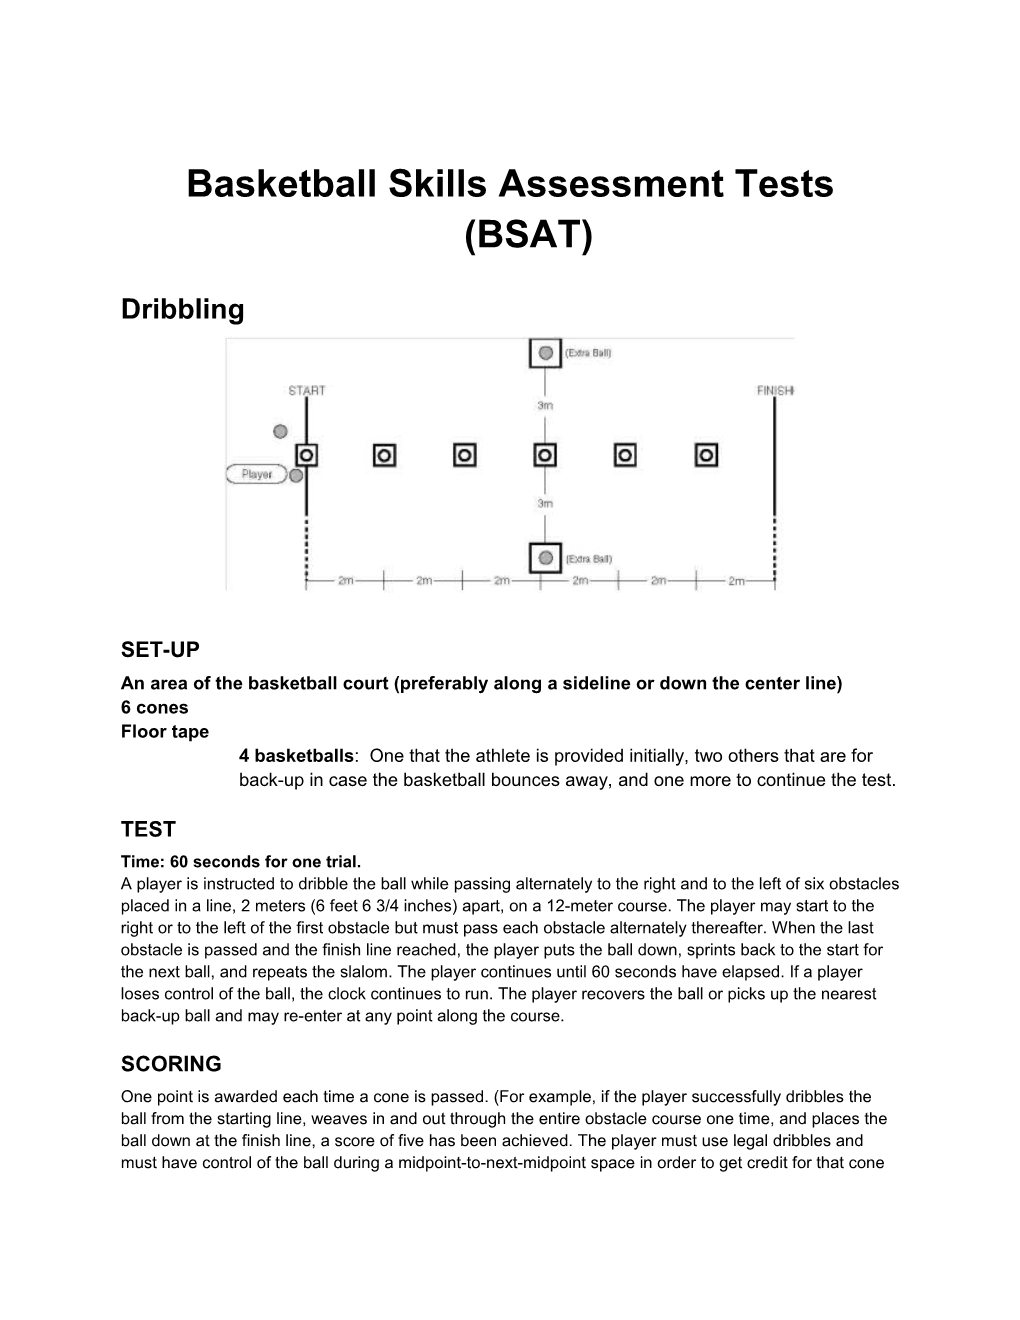 Basketball Skills Assessment Test